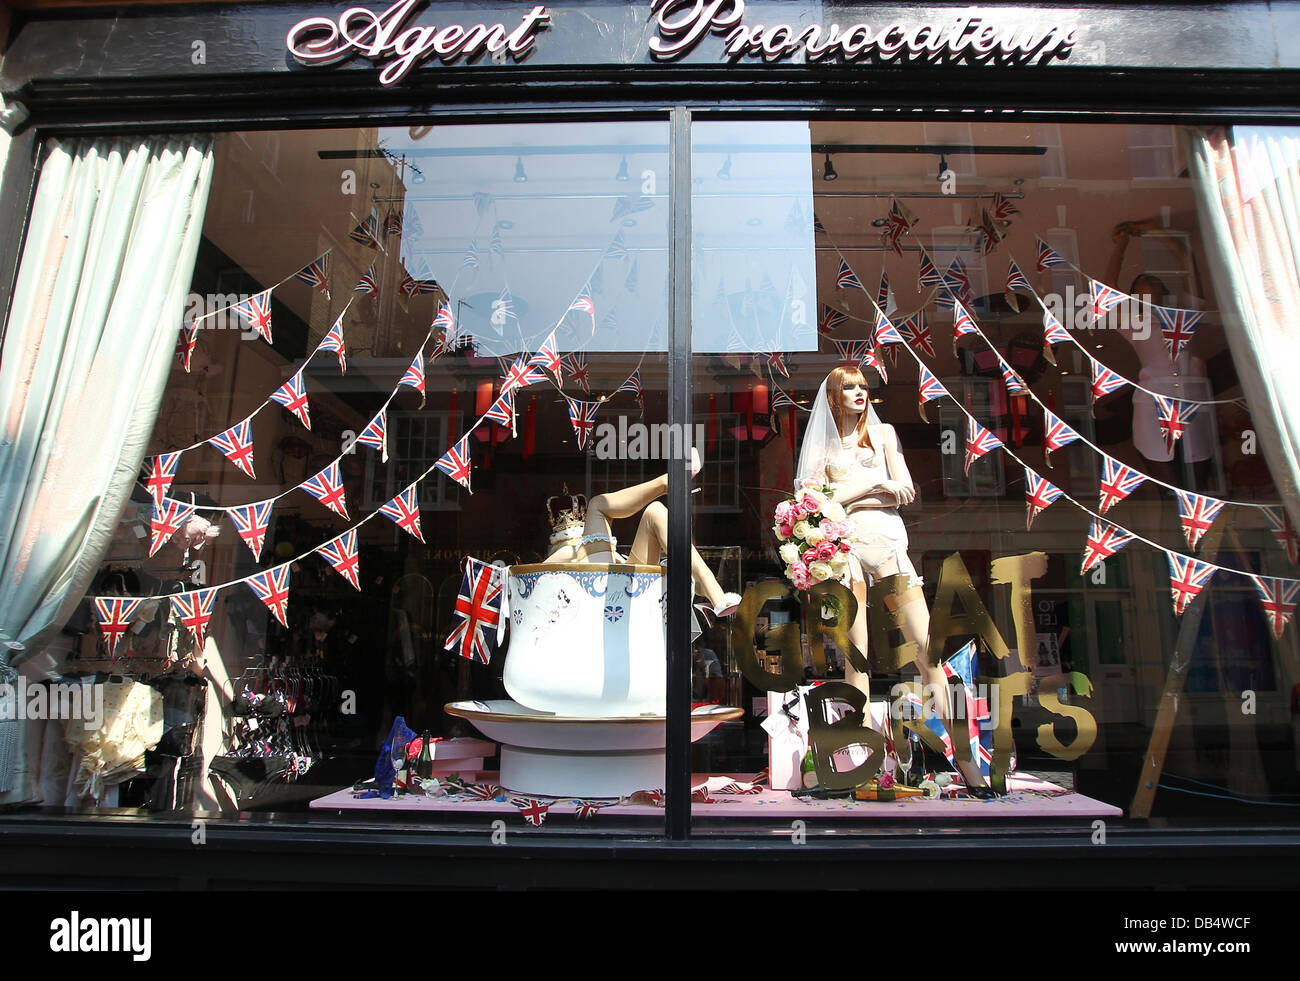 El Sloane Square, rama de la tienda de lencería de lujo Agent Provocateur  mostrar su escaparate en preparación para casarse con el príncipe Guillermo  Kate Middleton el 29 de abril de 2011